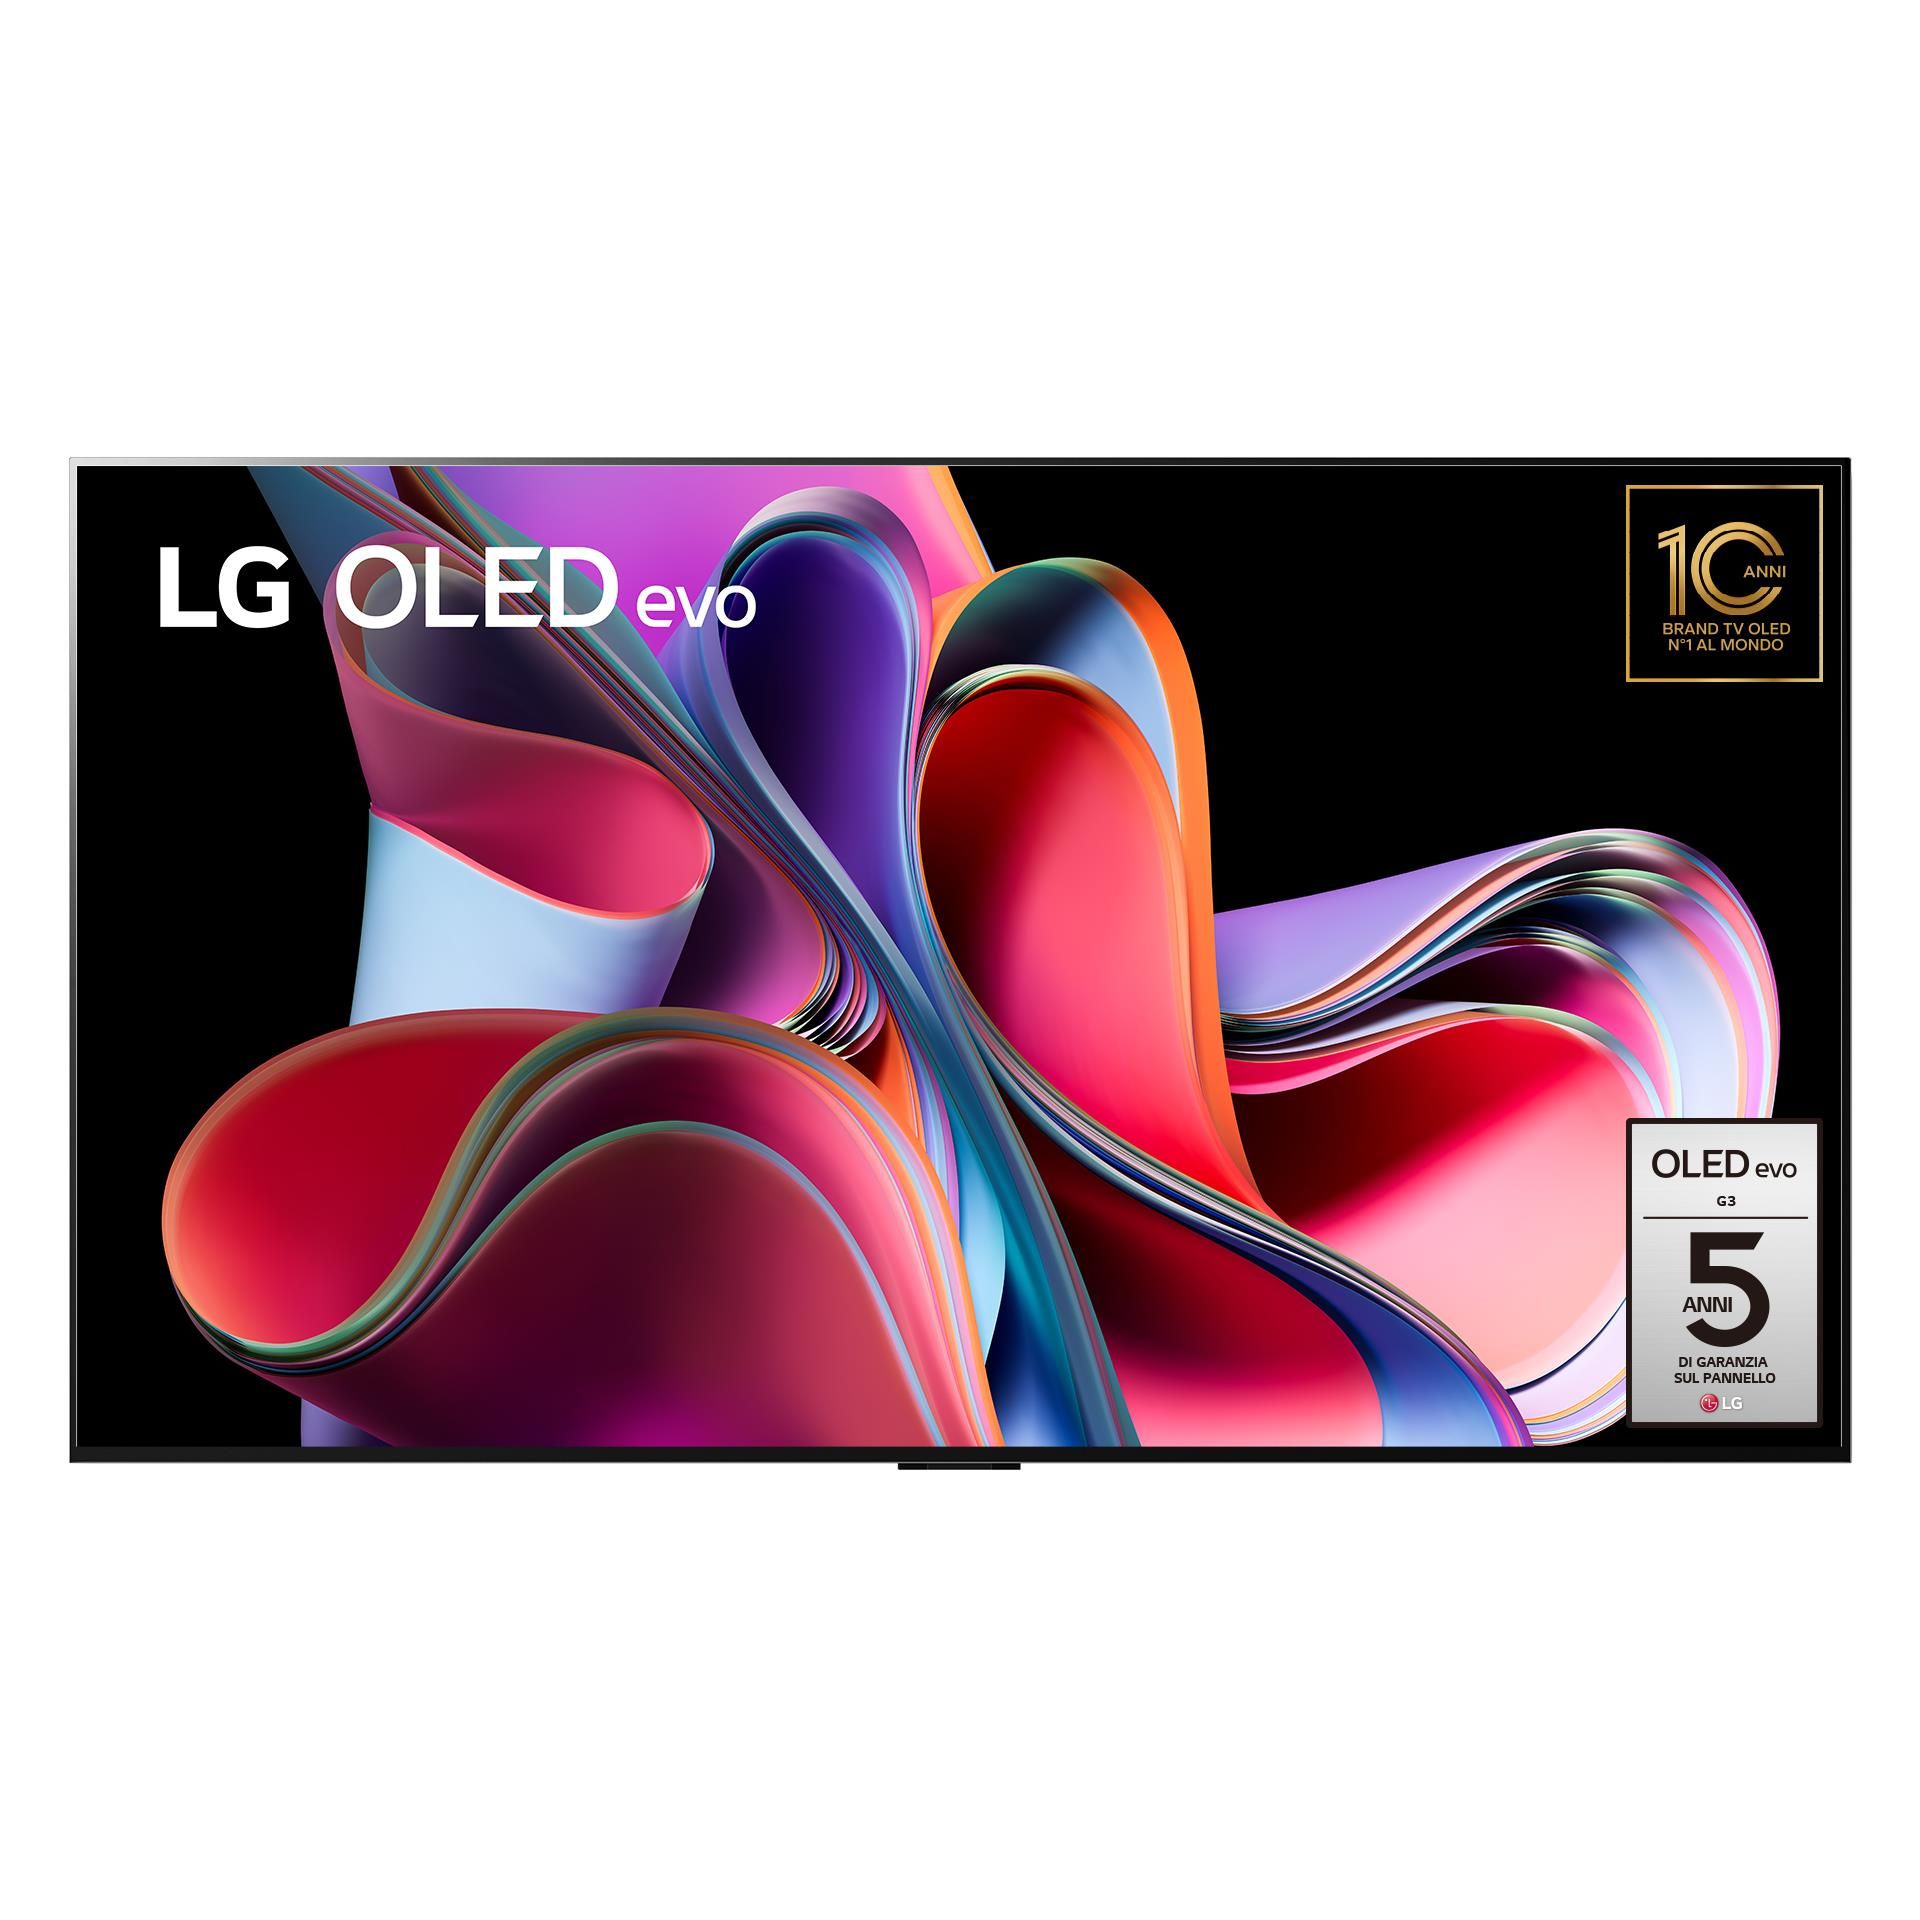 LG OLED Evo 55